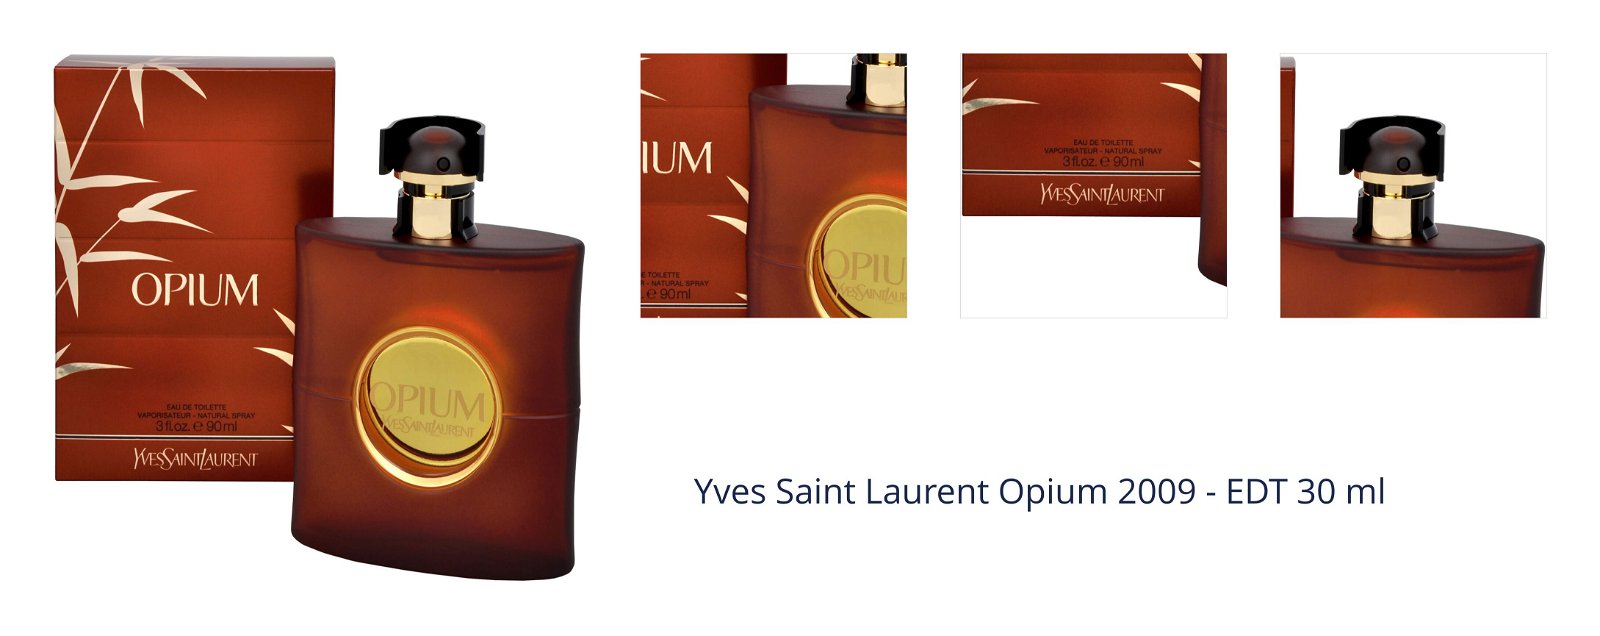 Yves Saint Laurent Opium 2009 - EDT 30 ml 1